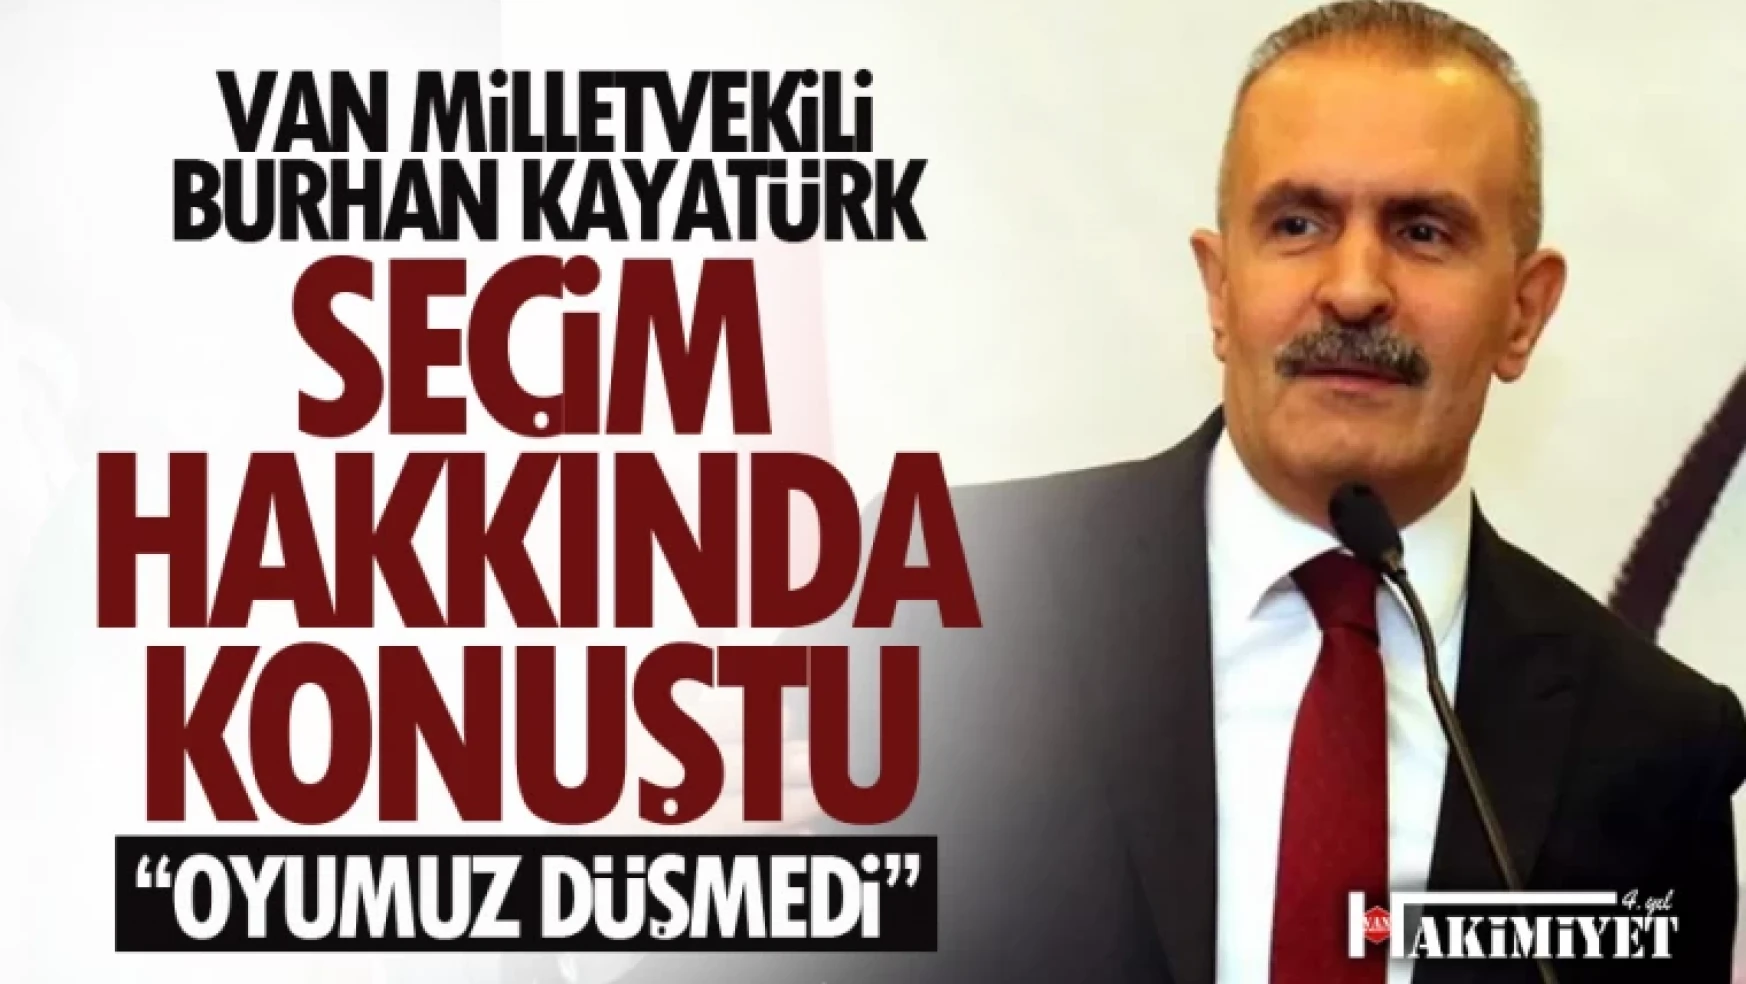 Van Milletvekili Burhan Kayatürk: Van'da oyumuz düşmedi!